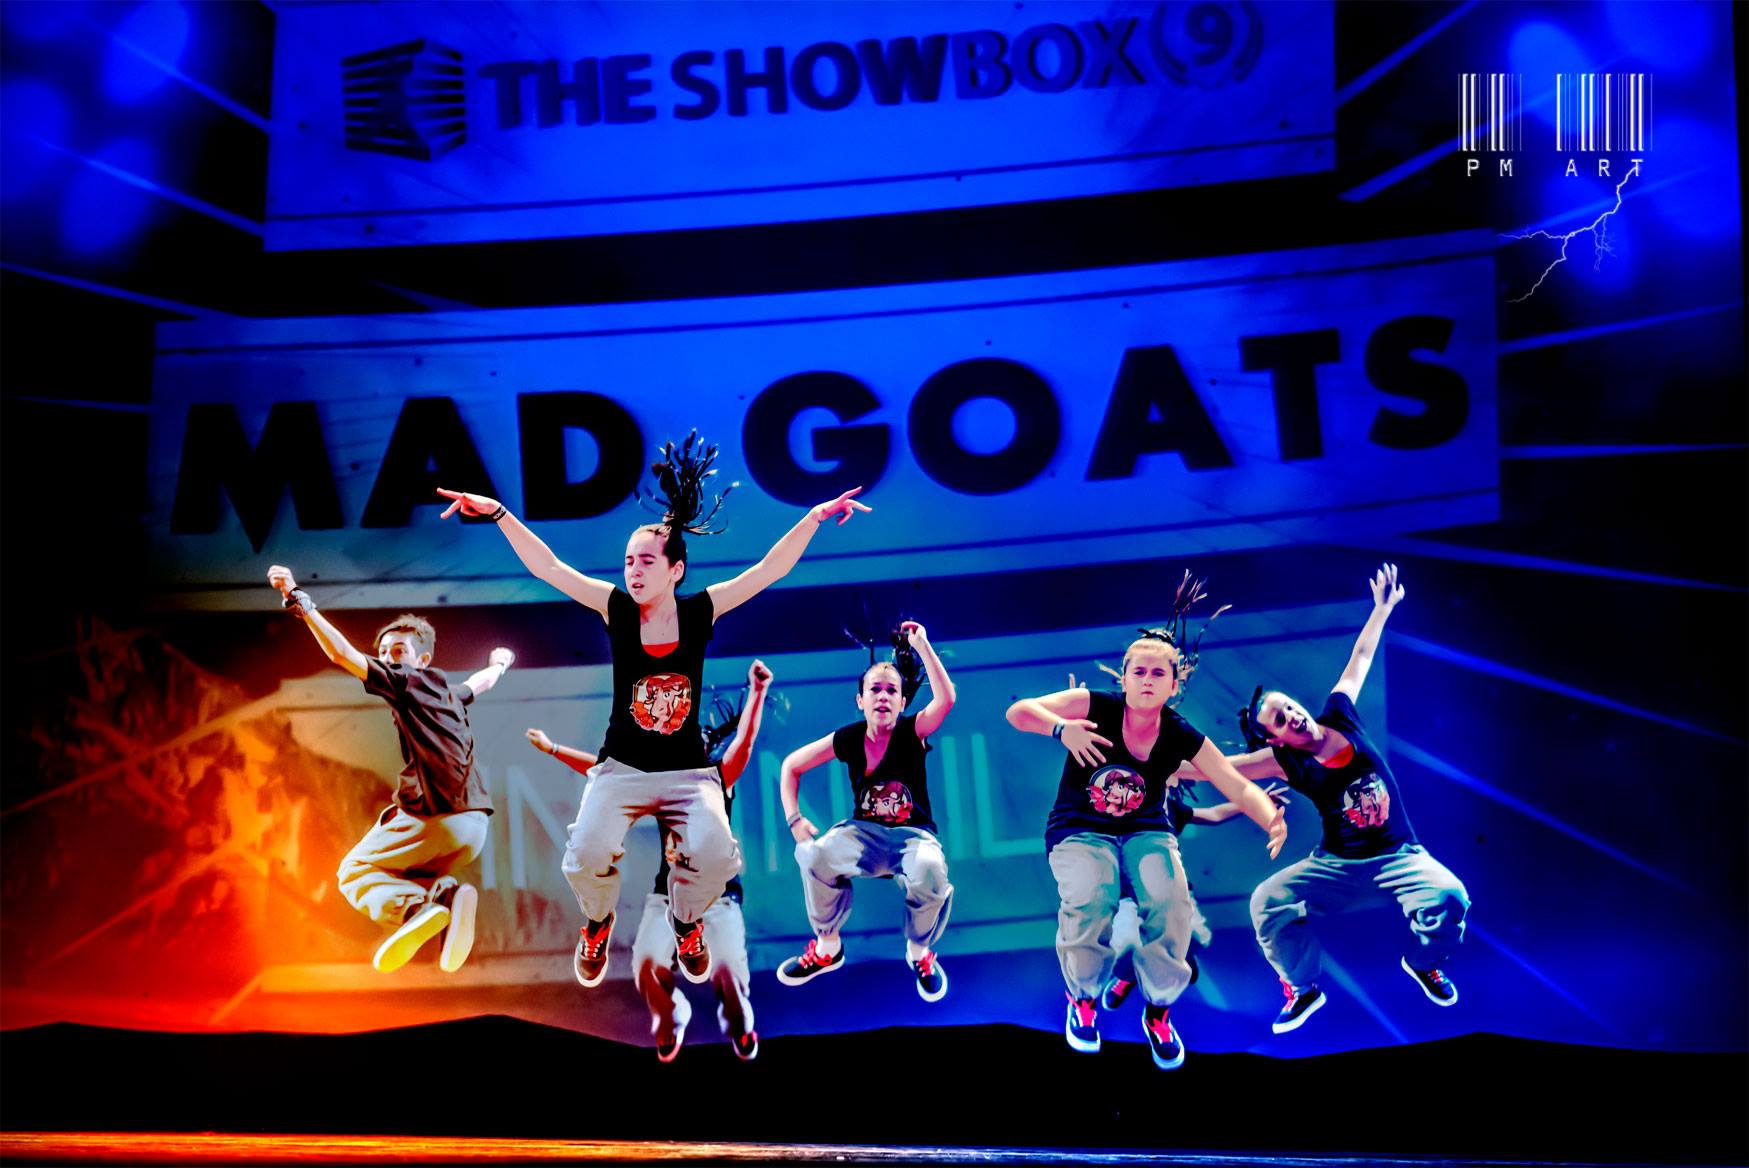 Mad Goats al campionat Showbox 2015